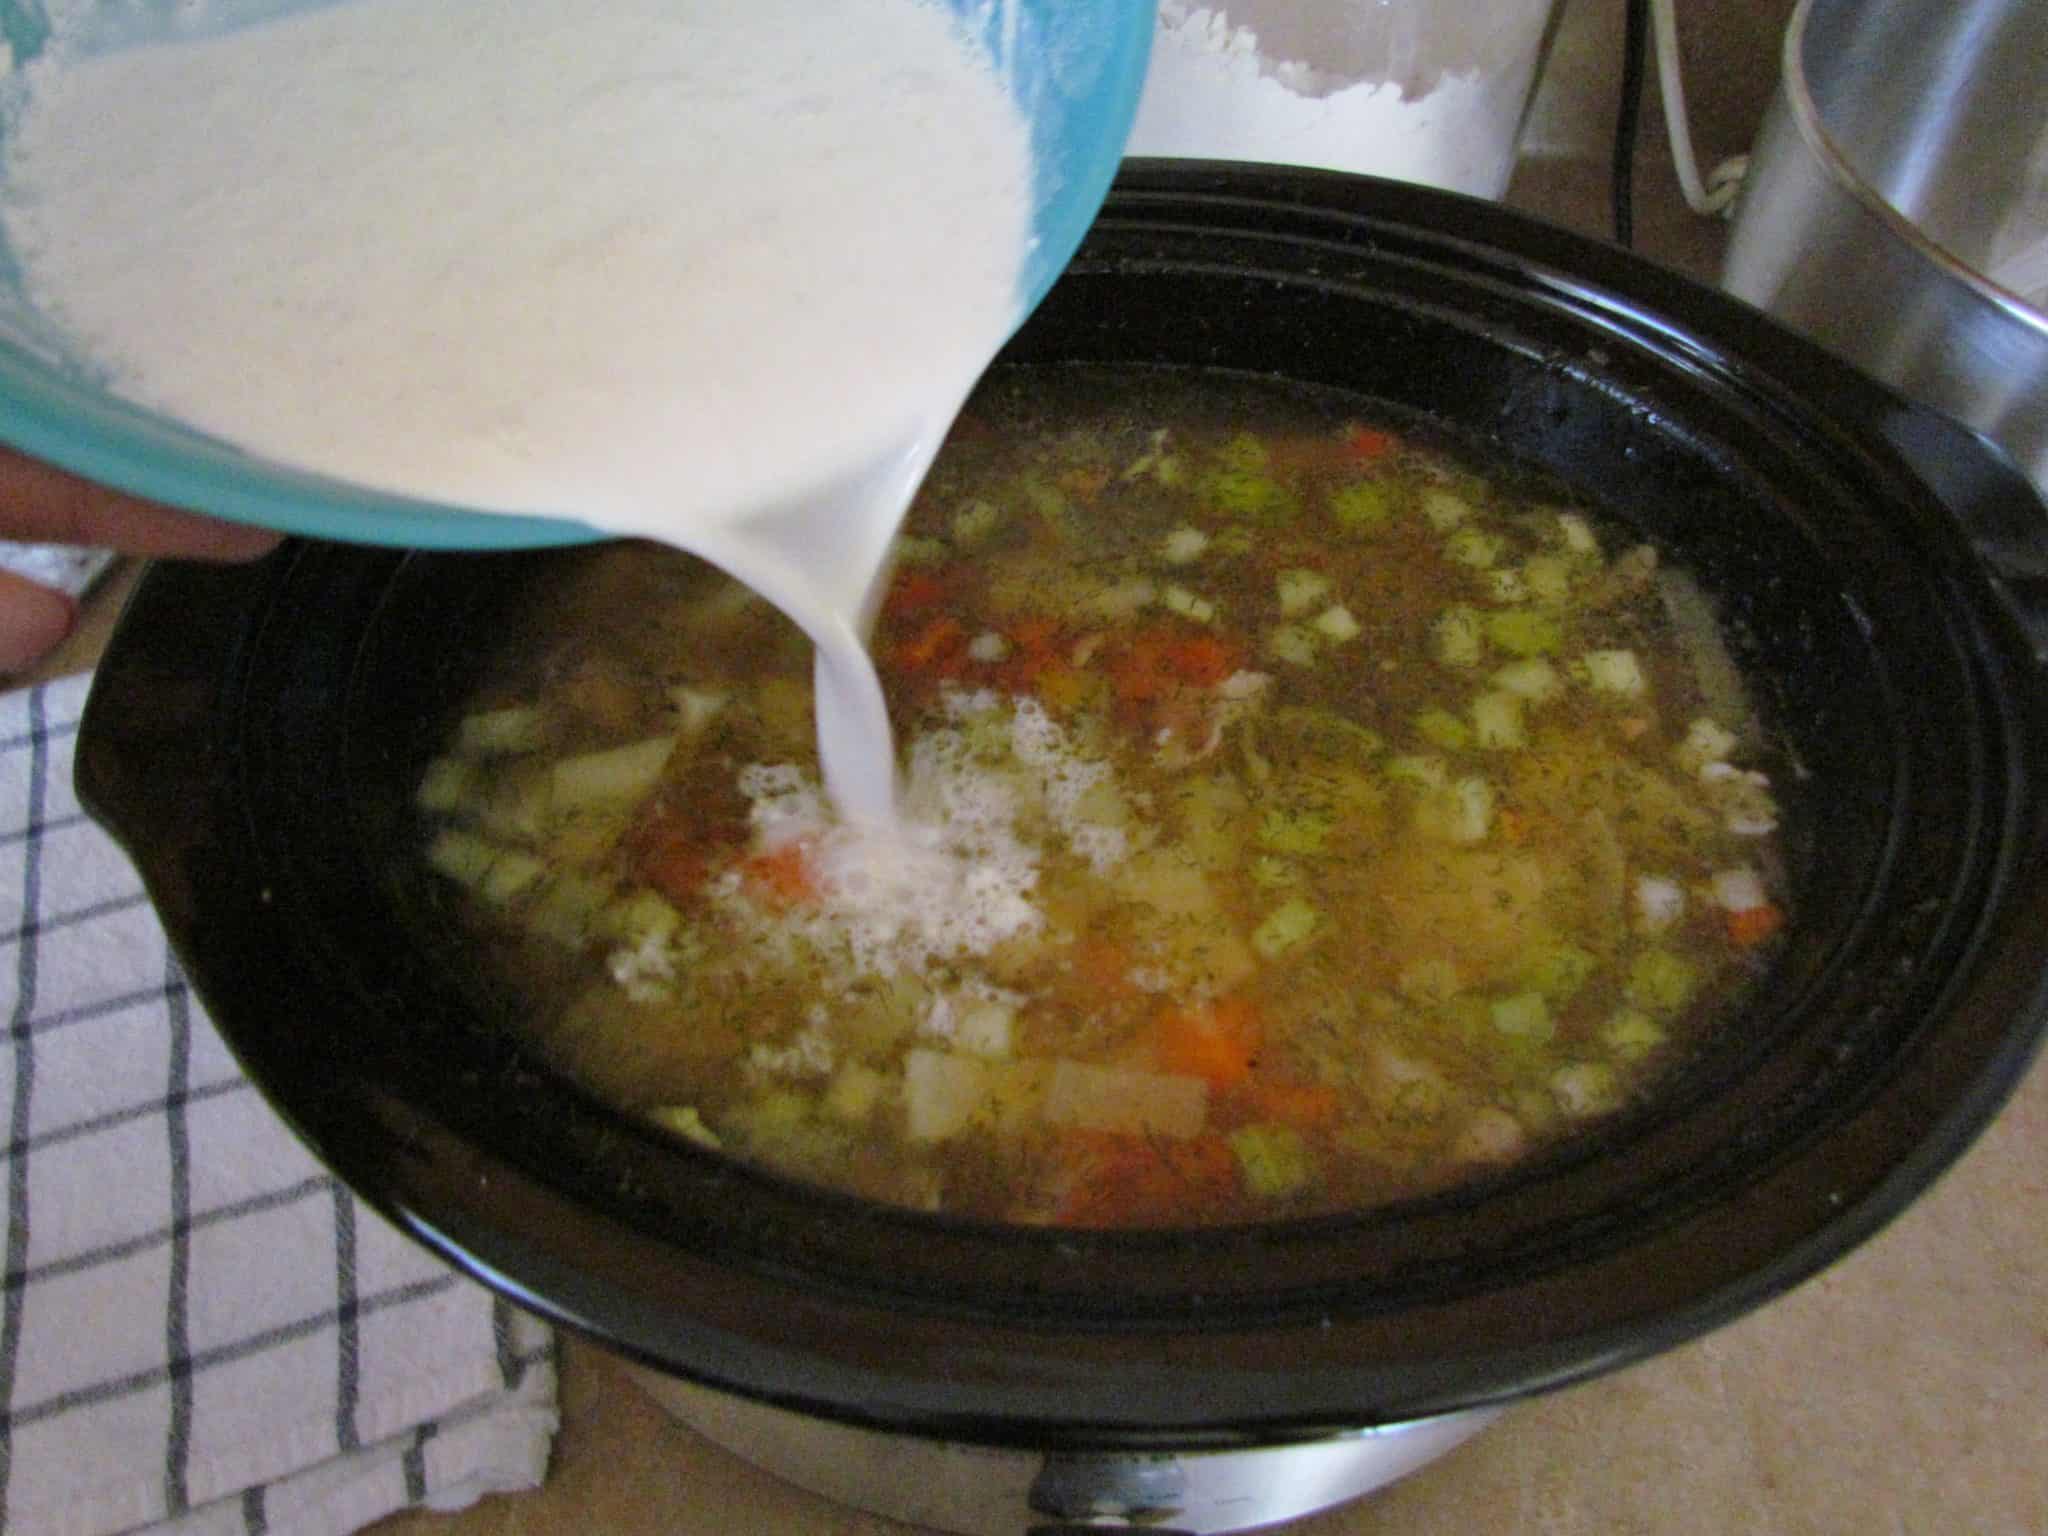 adding half and half into potato leek soup.